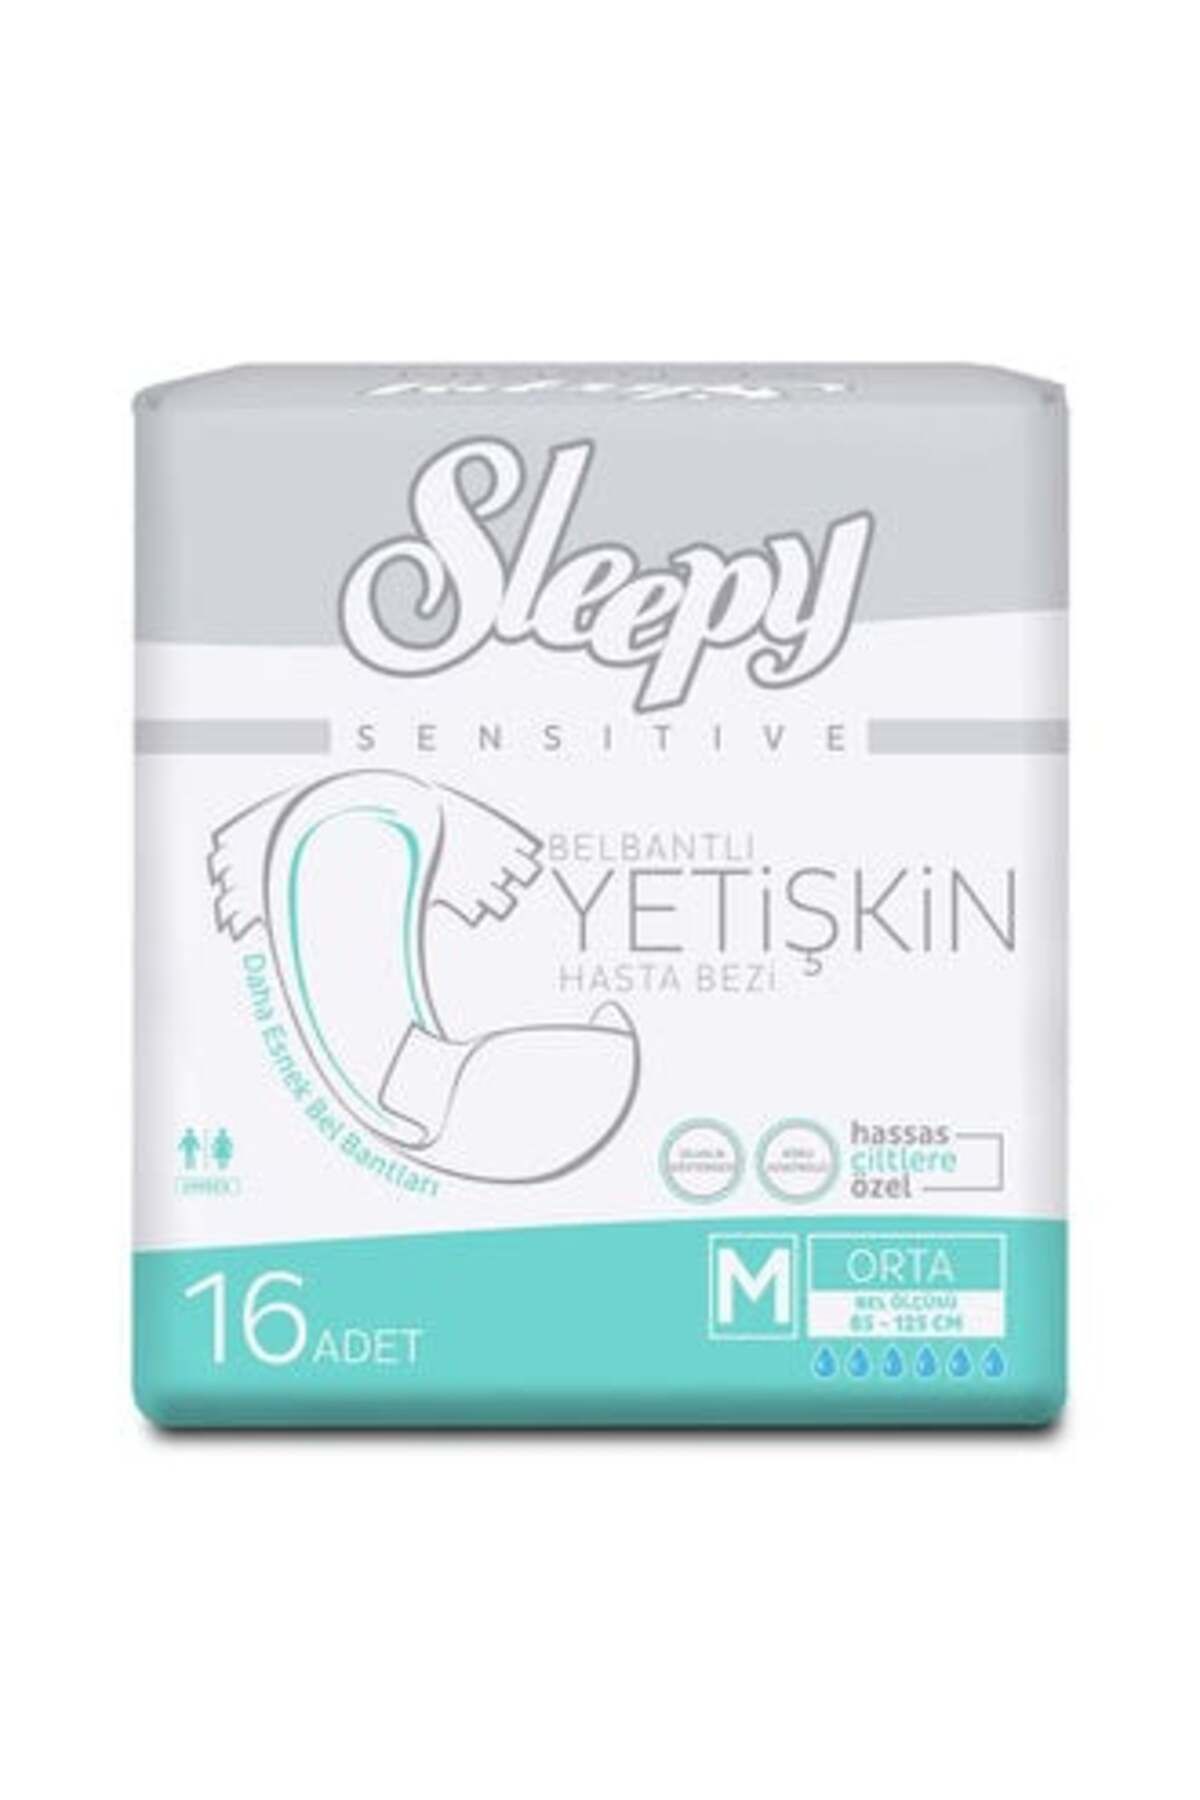 Sleepy Sensitive Belbantlı Yetişkin Hasta Bezi Medium 16'lı ( 1 ADET )